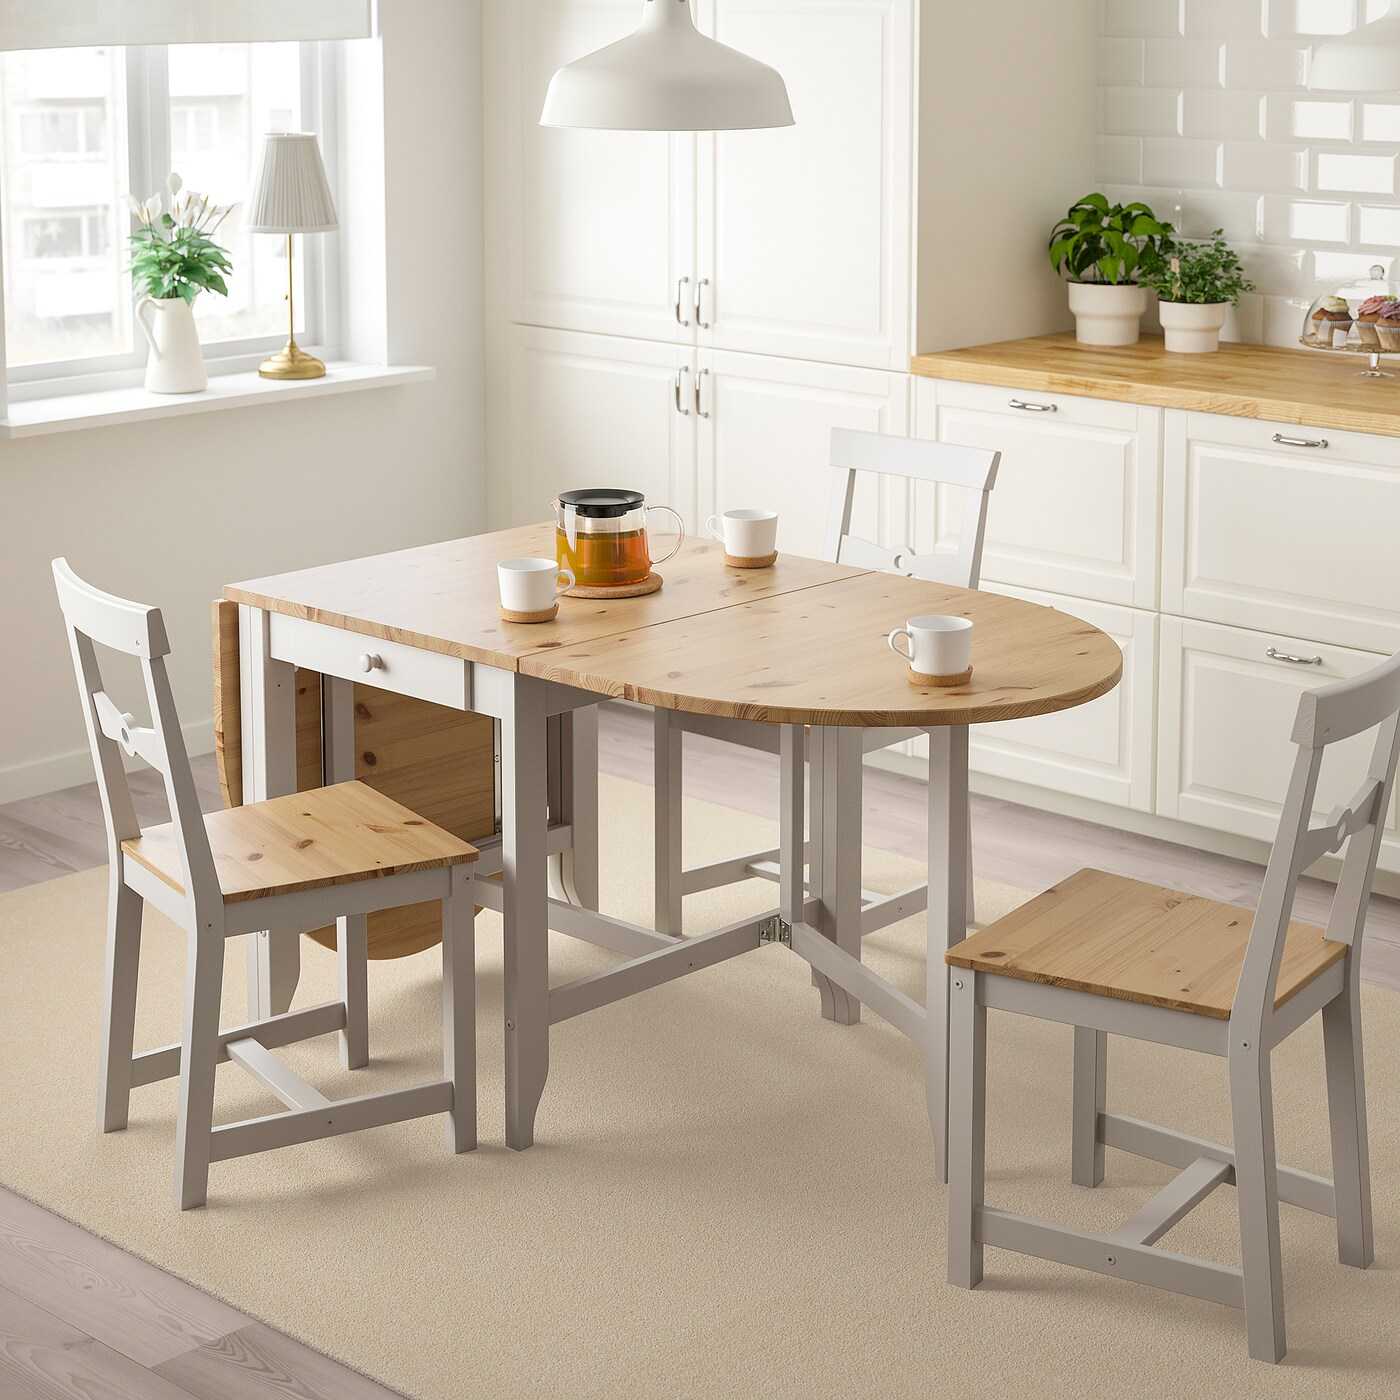 Мебель ikea для кухни: столы и стулья